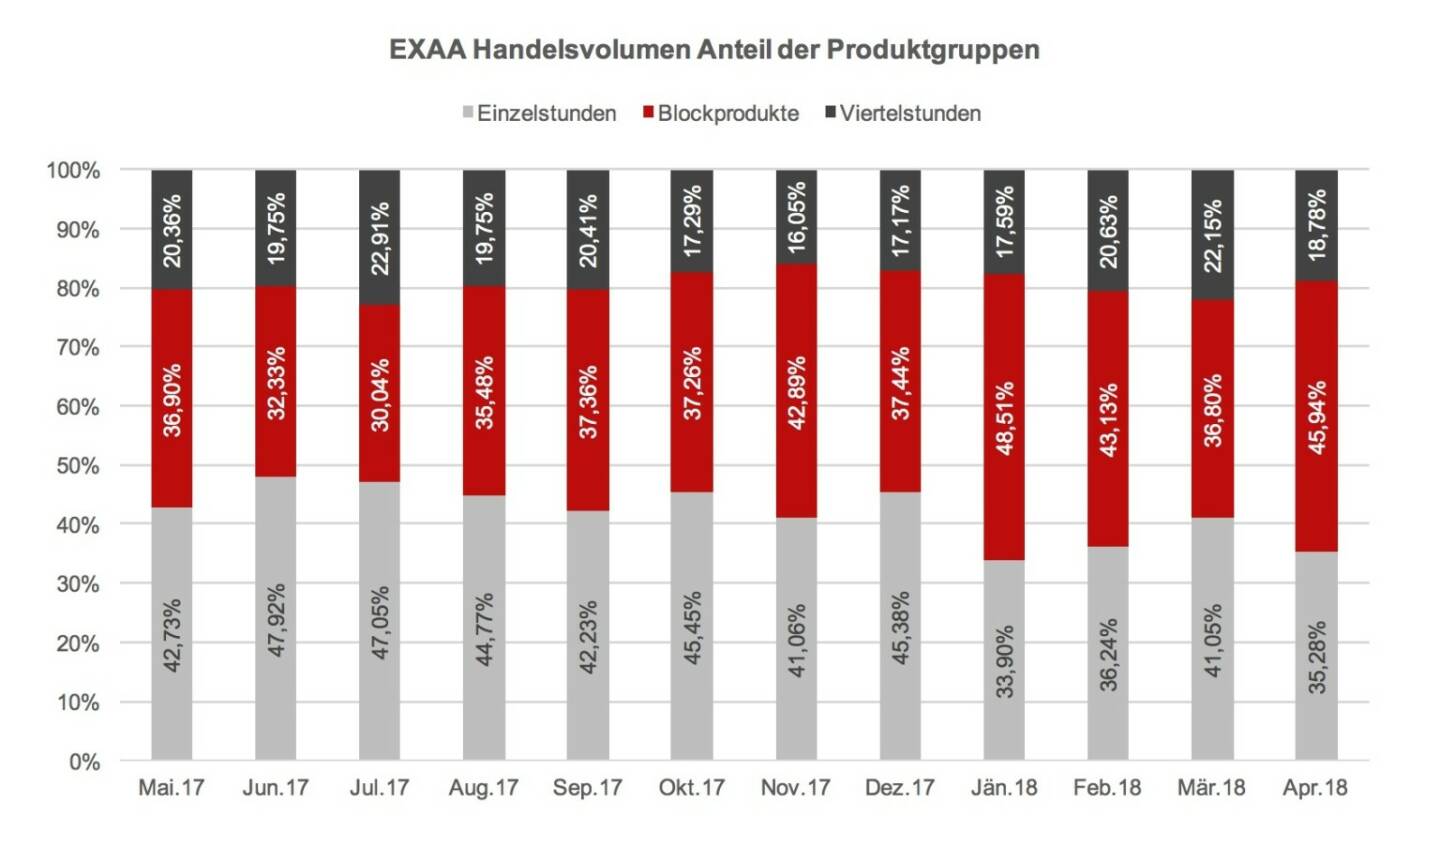 EXAA Handelsvolumen Anteil der Produktgruppen